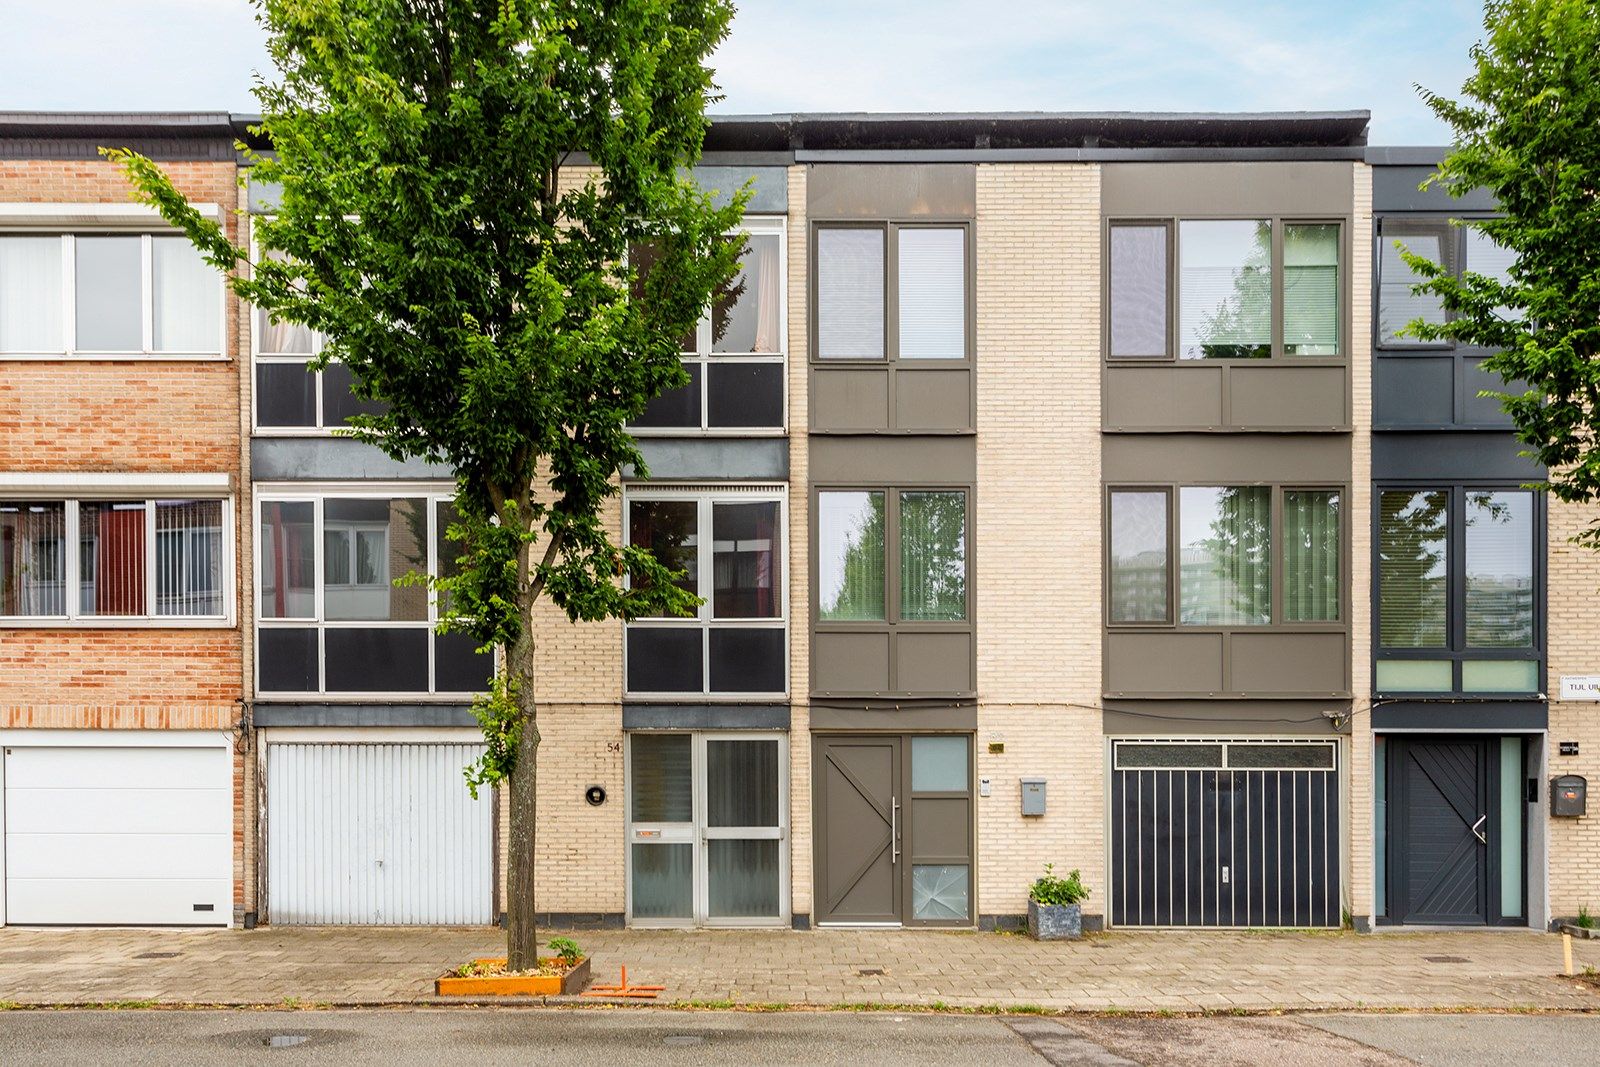 Huis te koop Tijl Uilenspiegellaan 54 - - 2050 Antwerpen